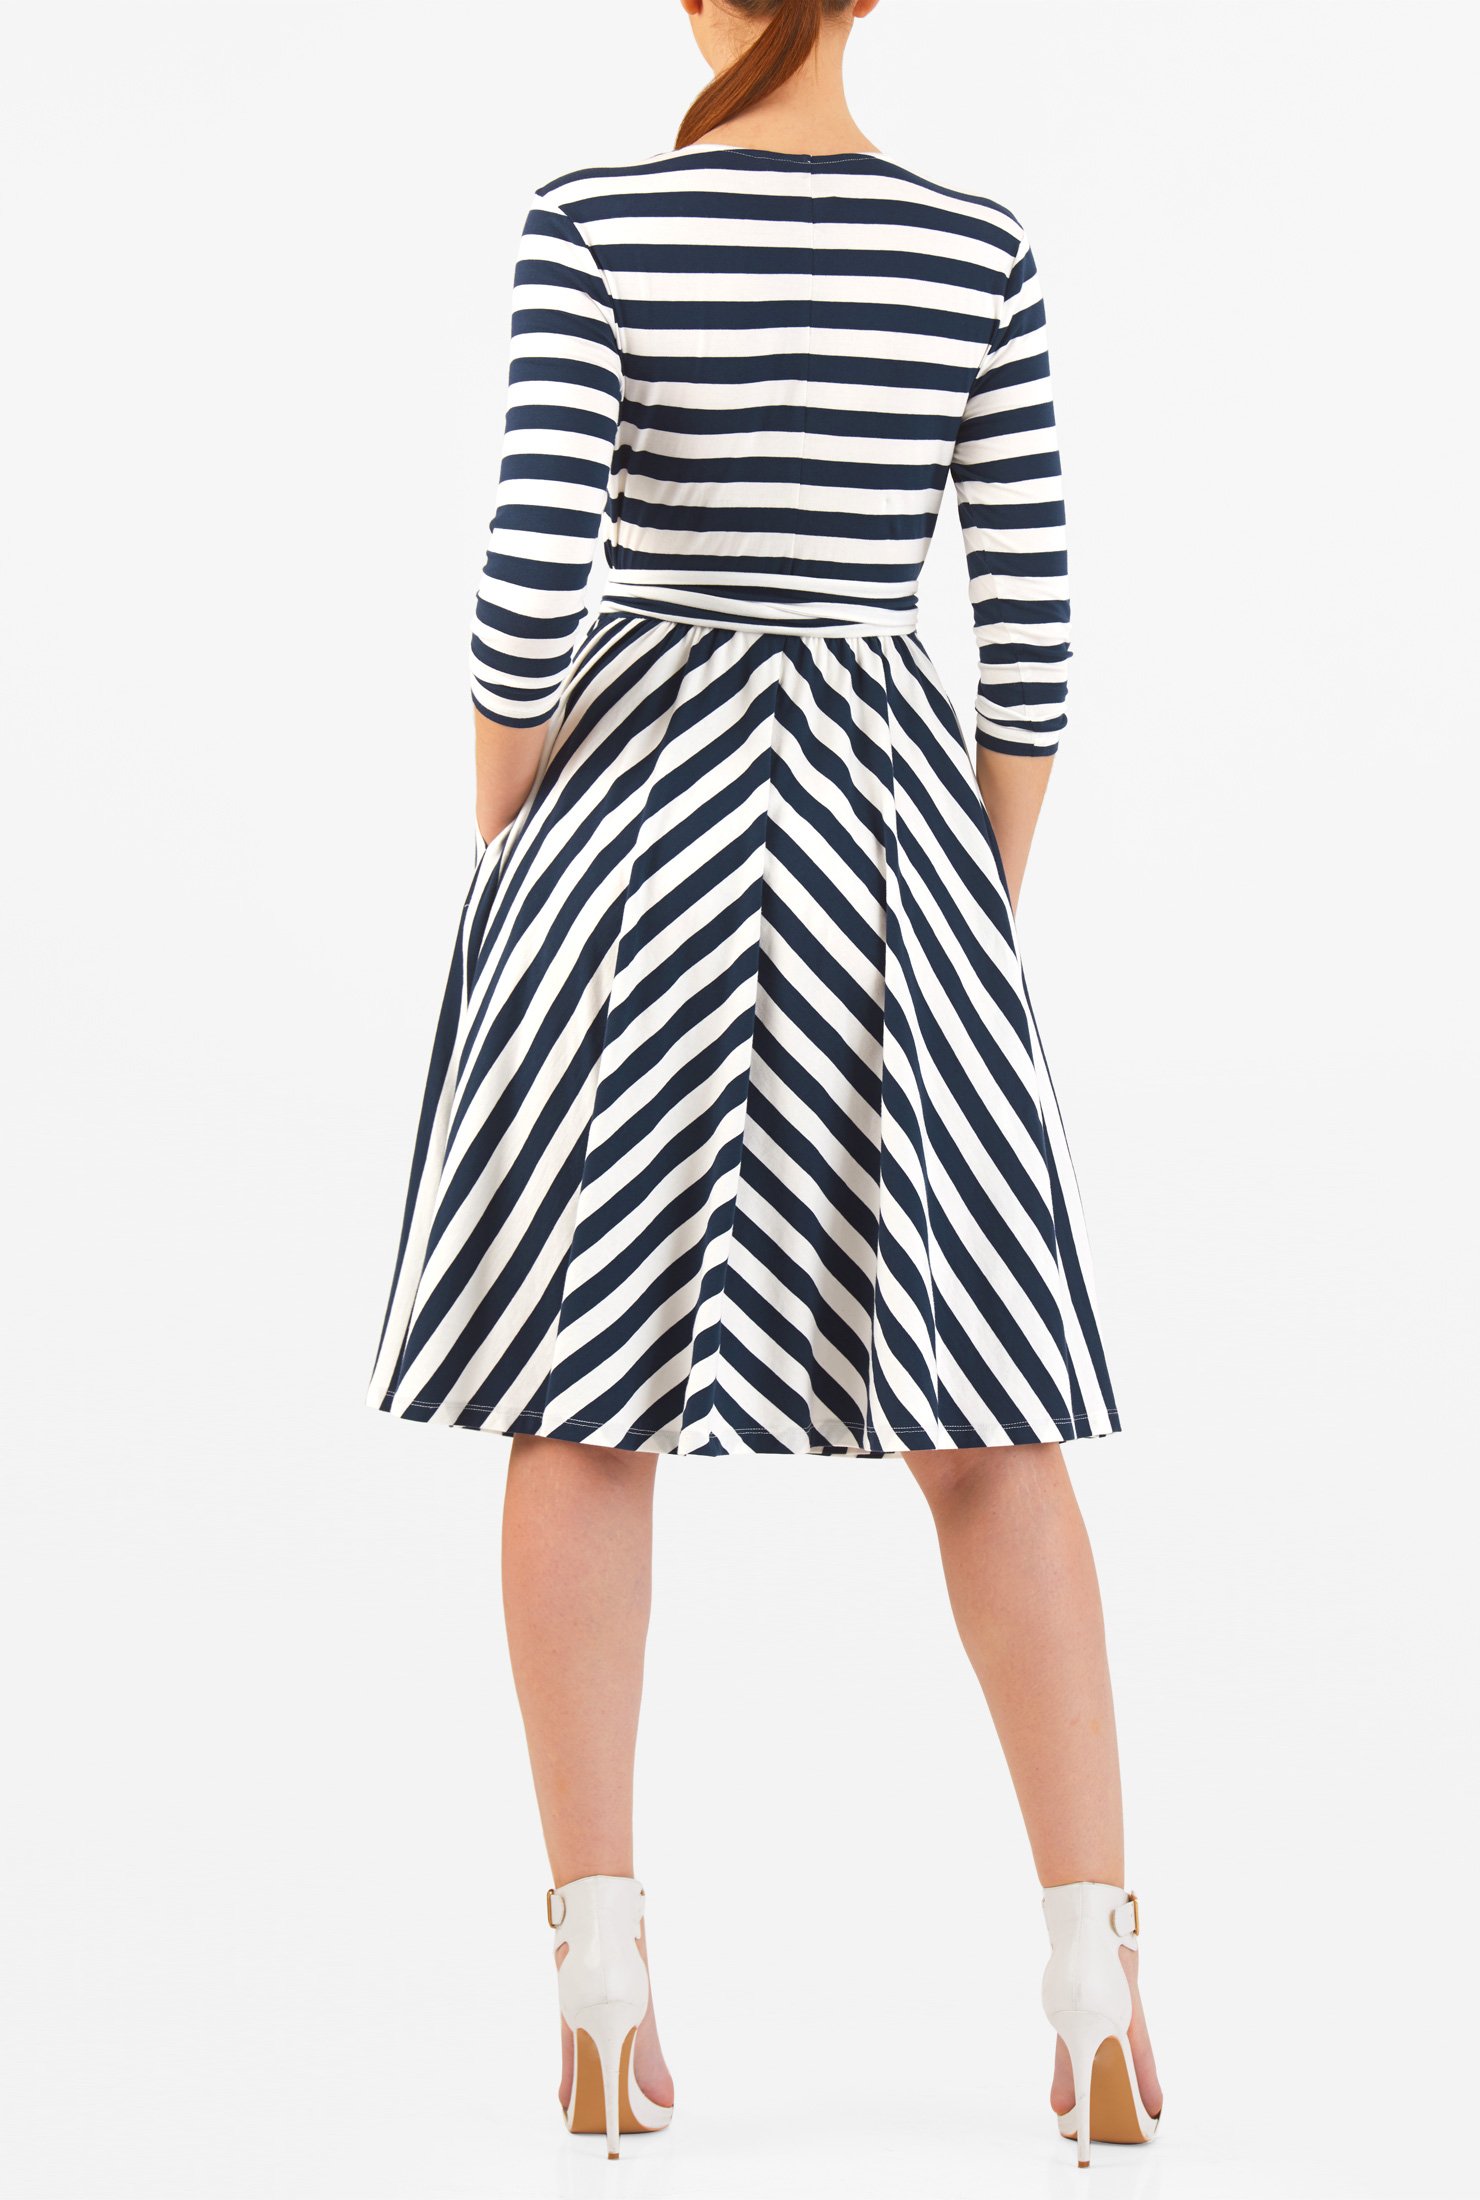 Shop Stripe cotton jersey knit faux-wrap dress | eShakti